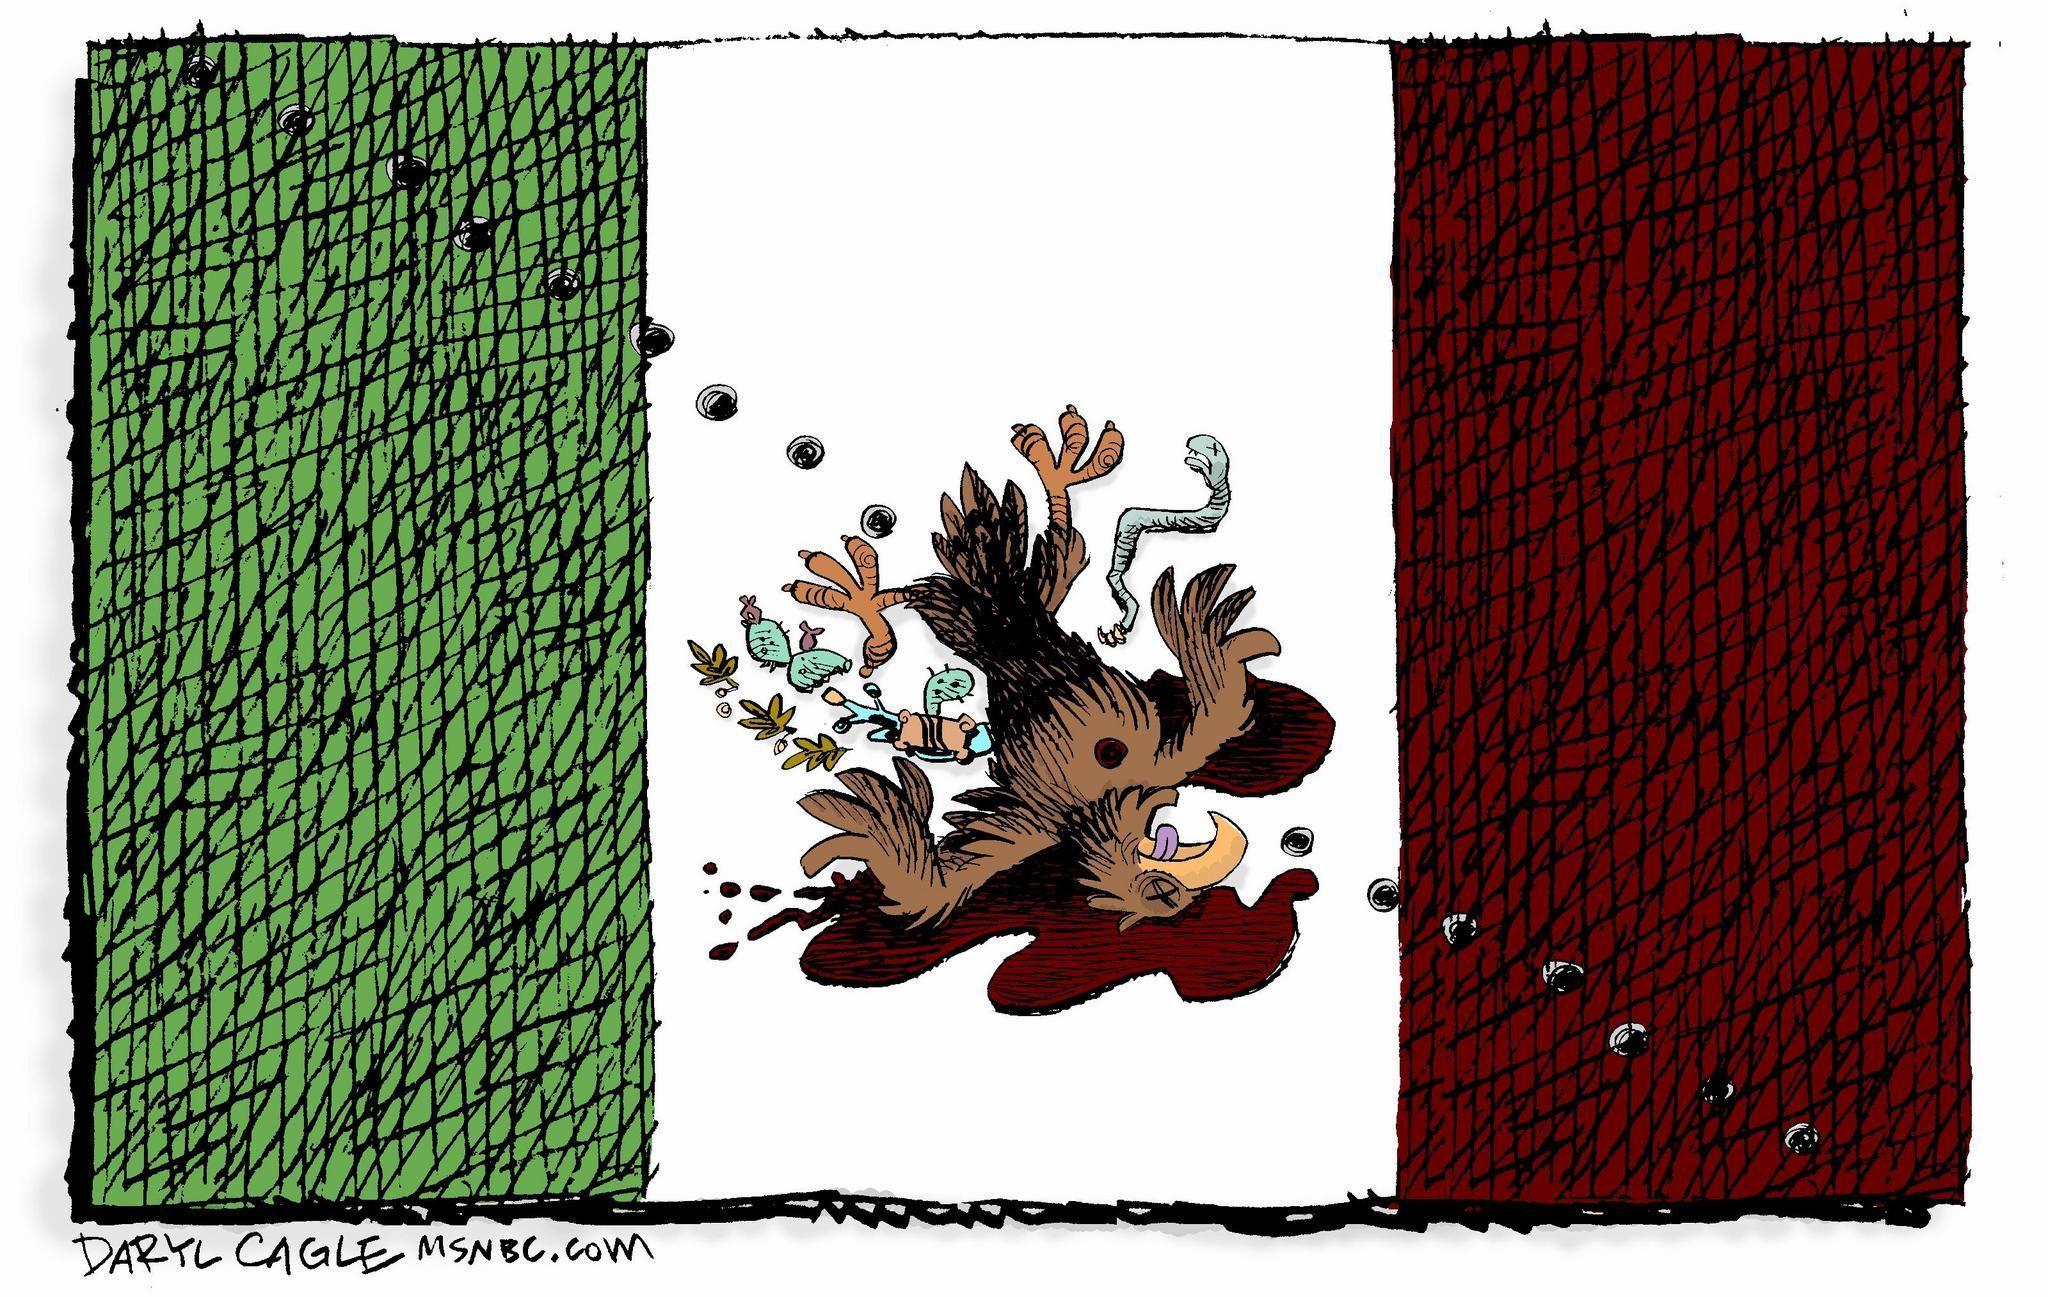 Mexican Flag Bird Logo - My Mexican flag Cartoon and angry readers | NJ.com